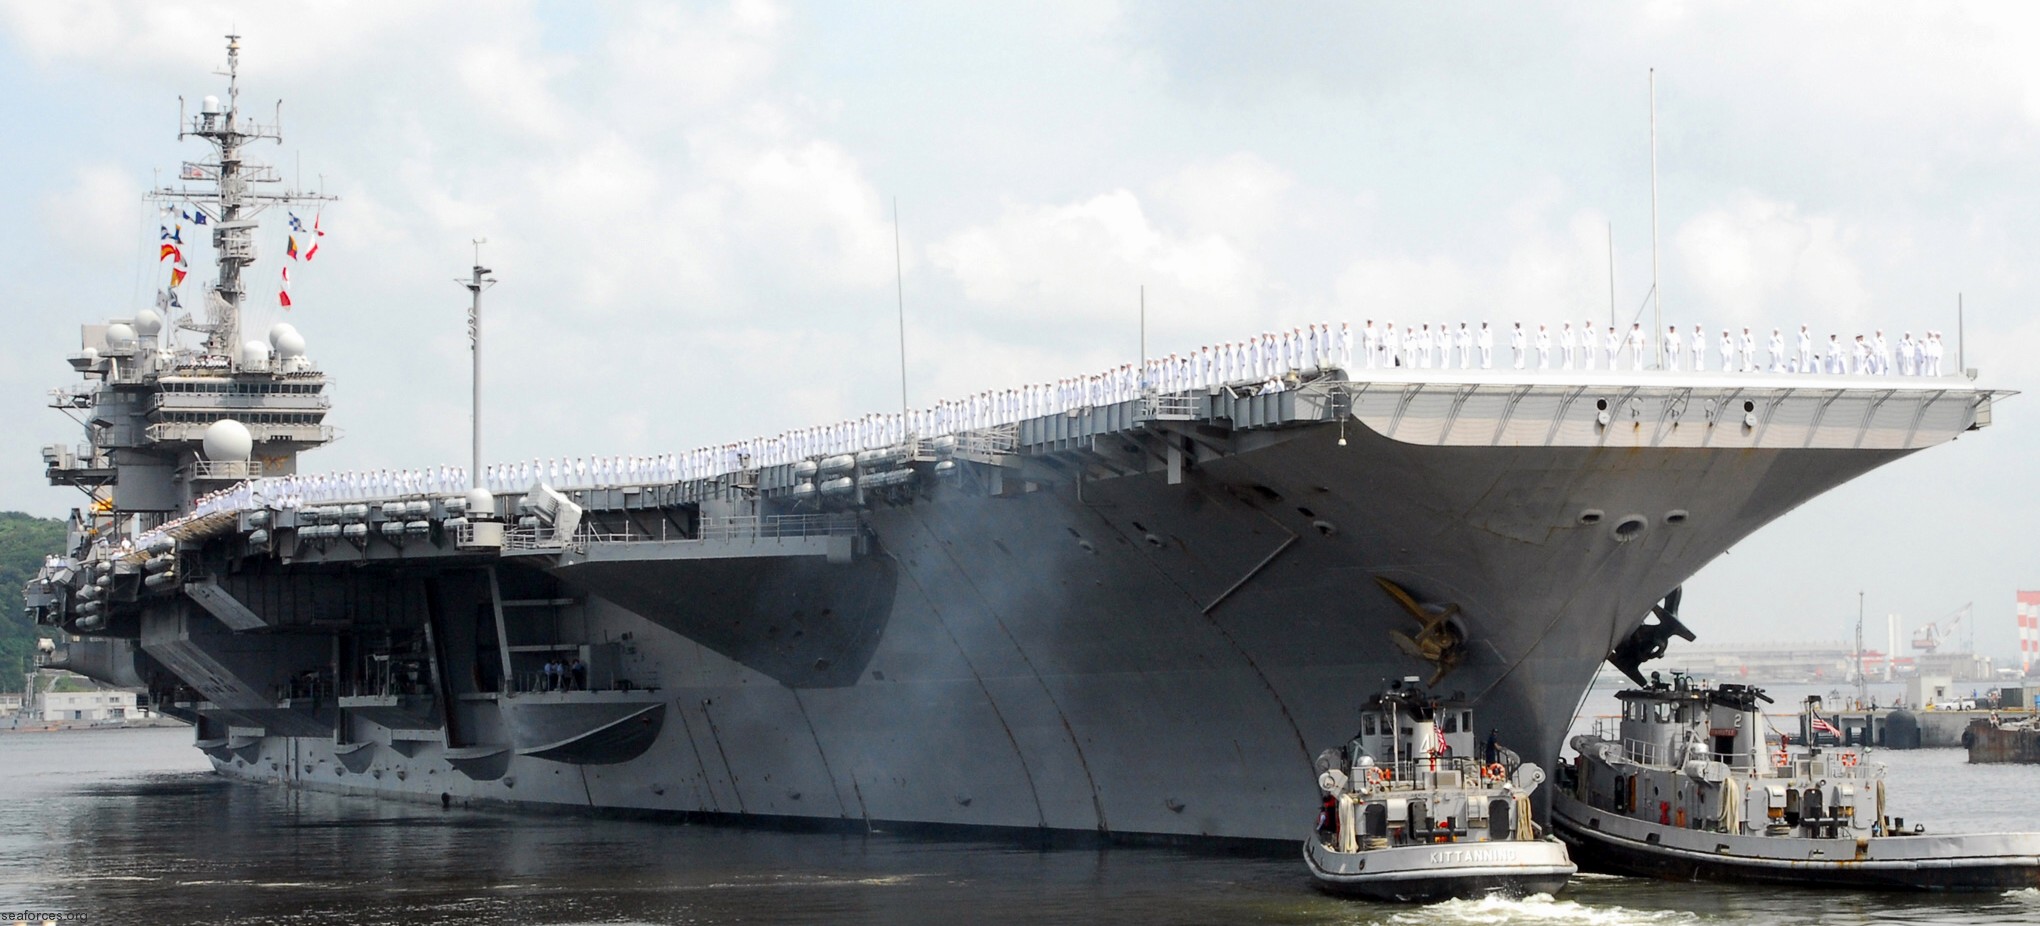 cv-63 uss kitty hawk aircraft carrier us navy 49 departing yokosuka